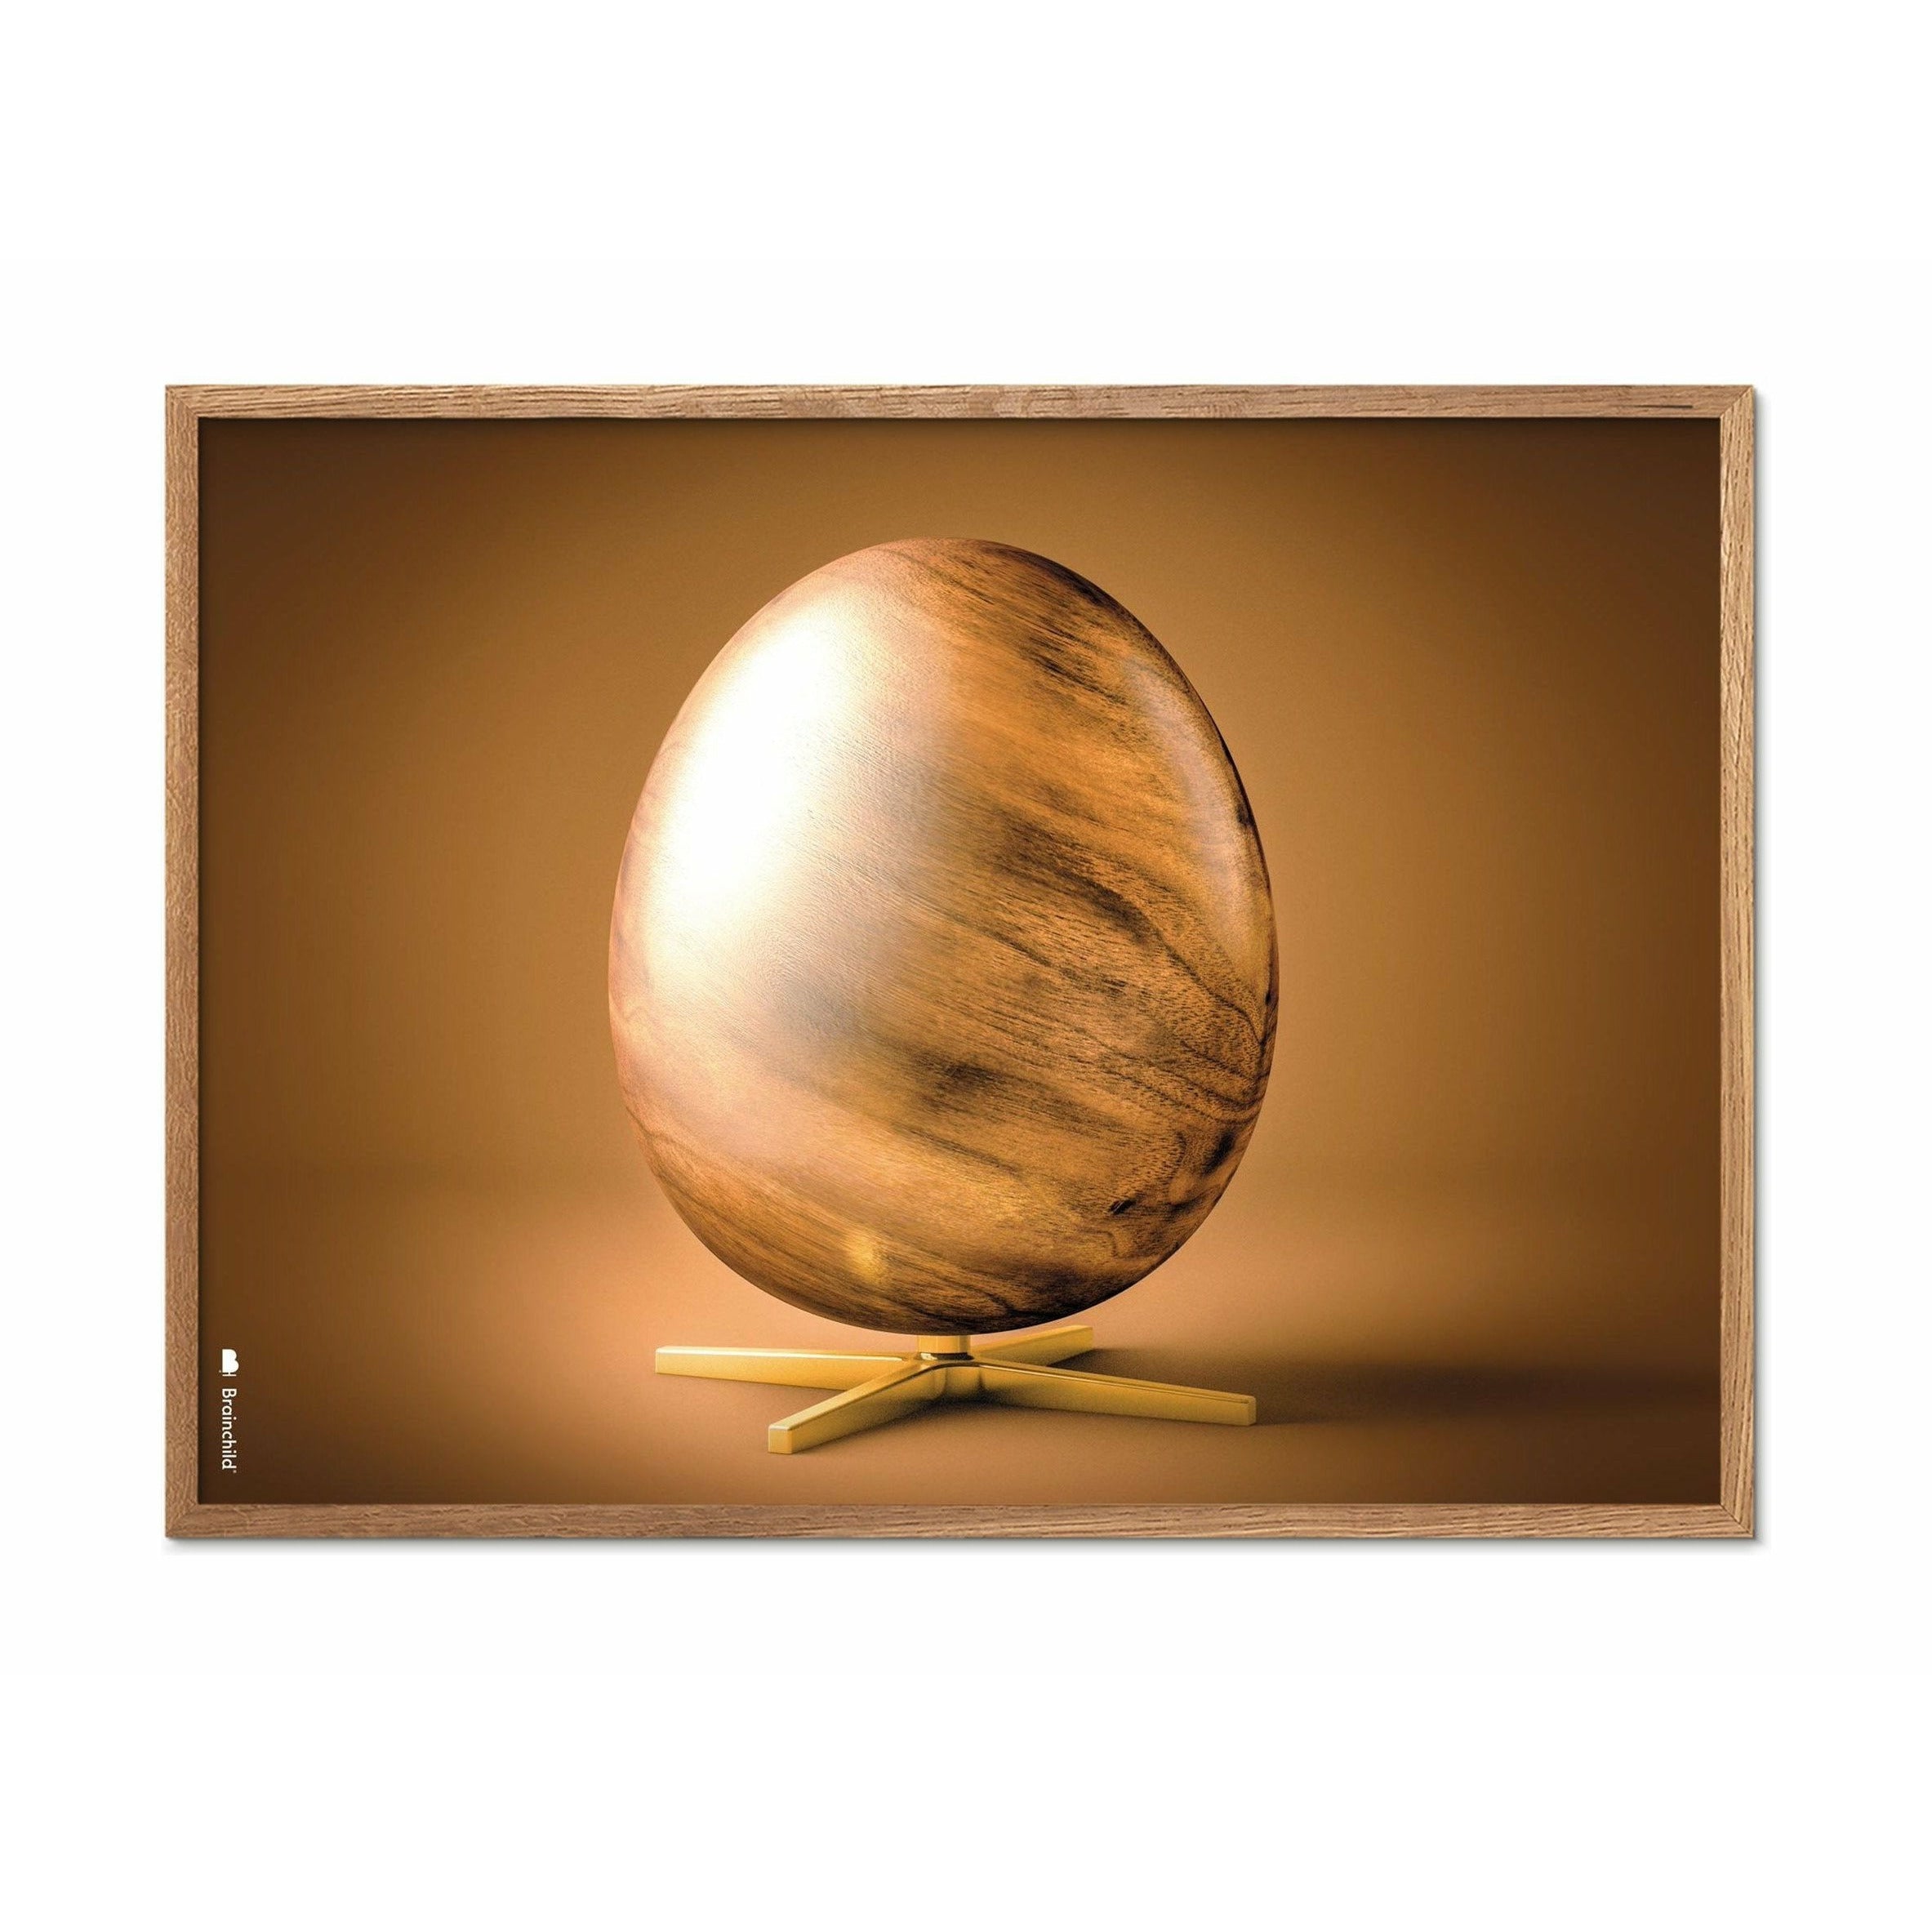 Brainchild Egg Cross Format Poster, Frame Made Of Light Wood 30x40 Cm, Brown